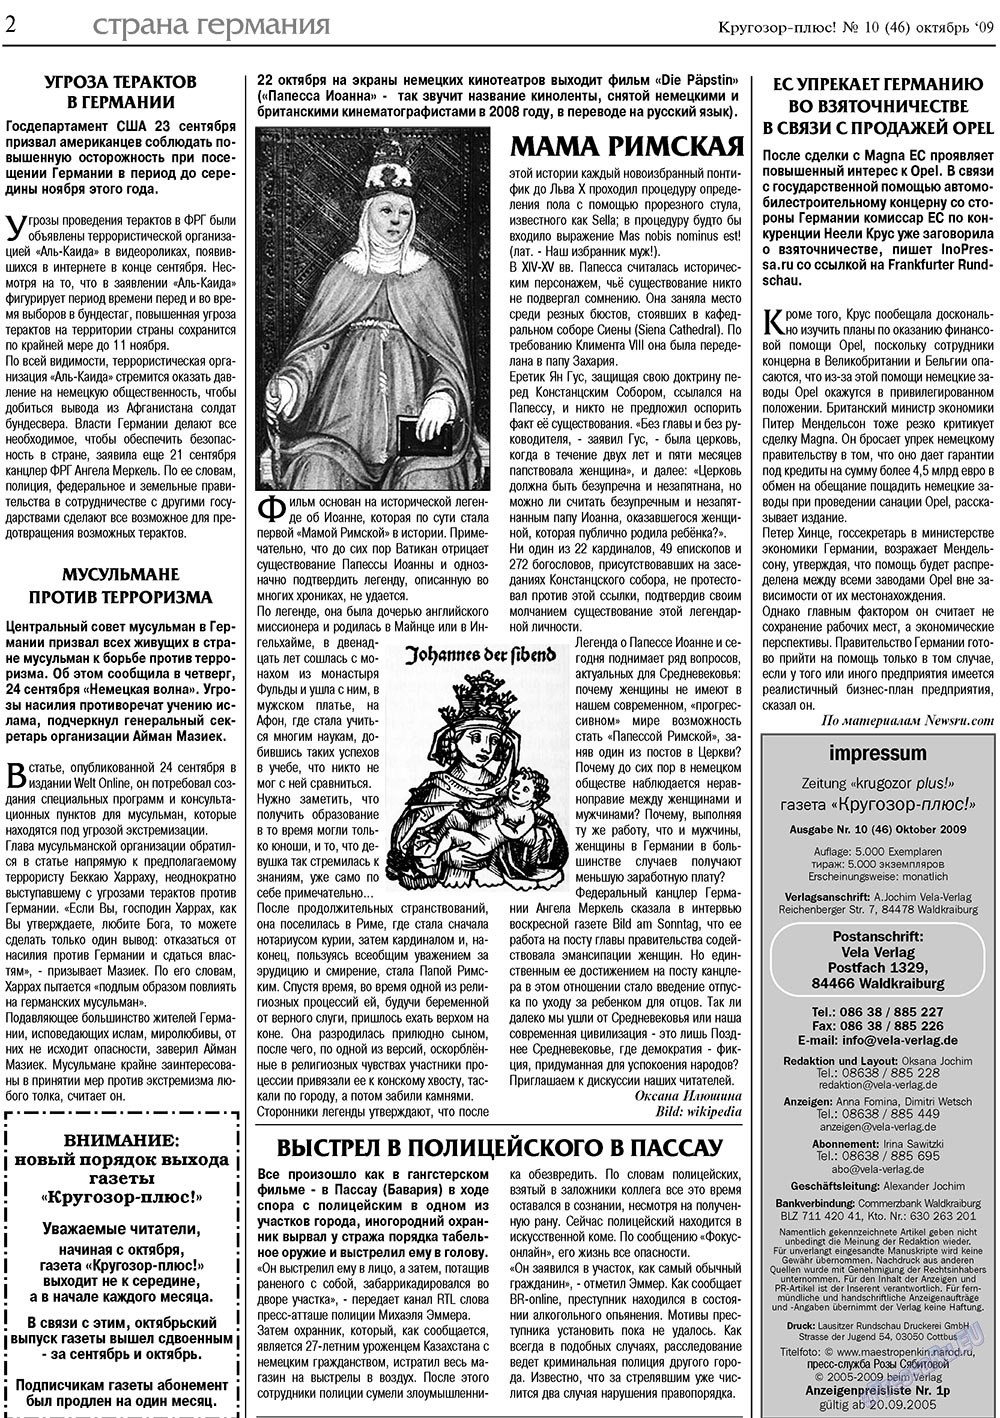 Кругозор плюс!, газета. 2009 №10 стр.2